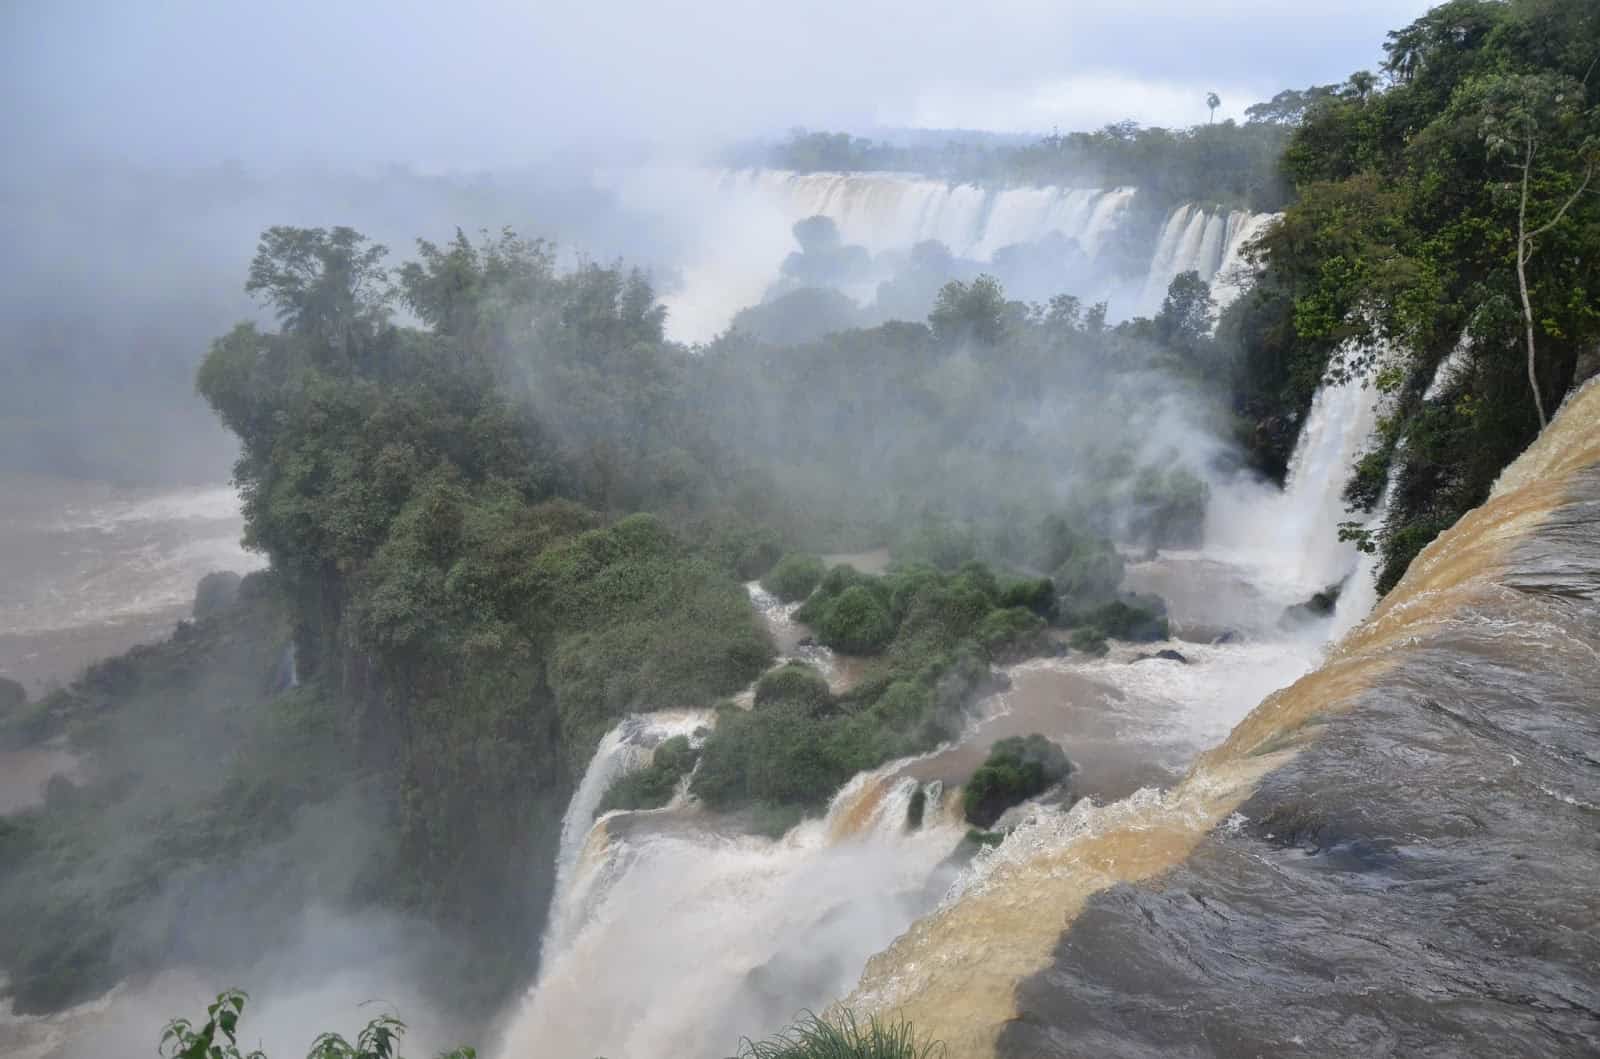 Upper Circuit of Parque Nacional Iguazú, Argentina